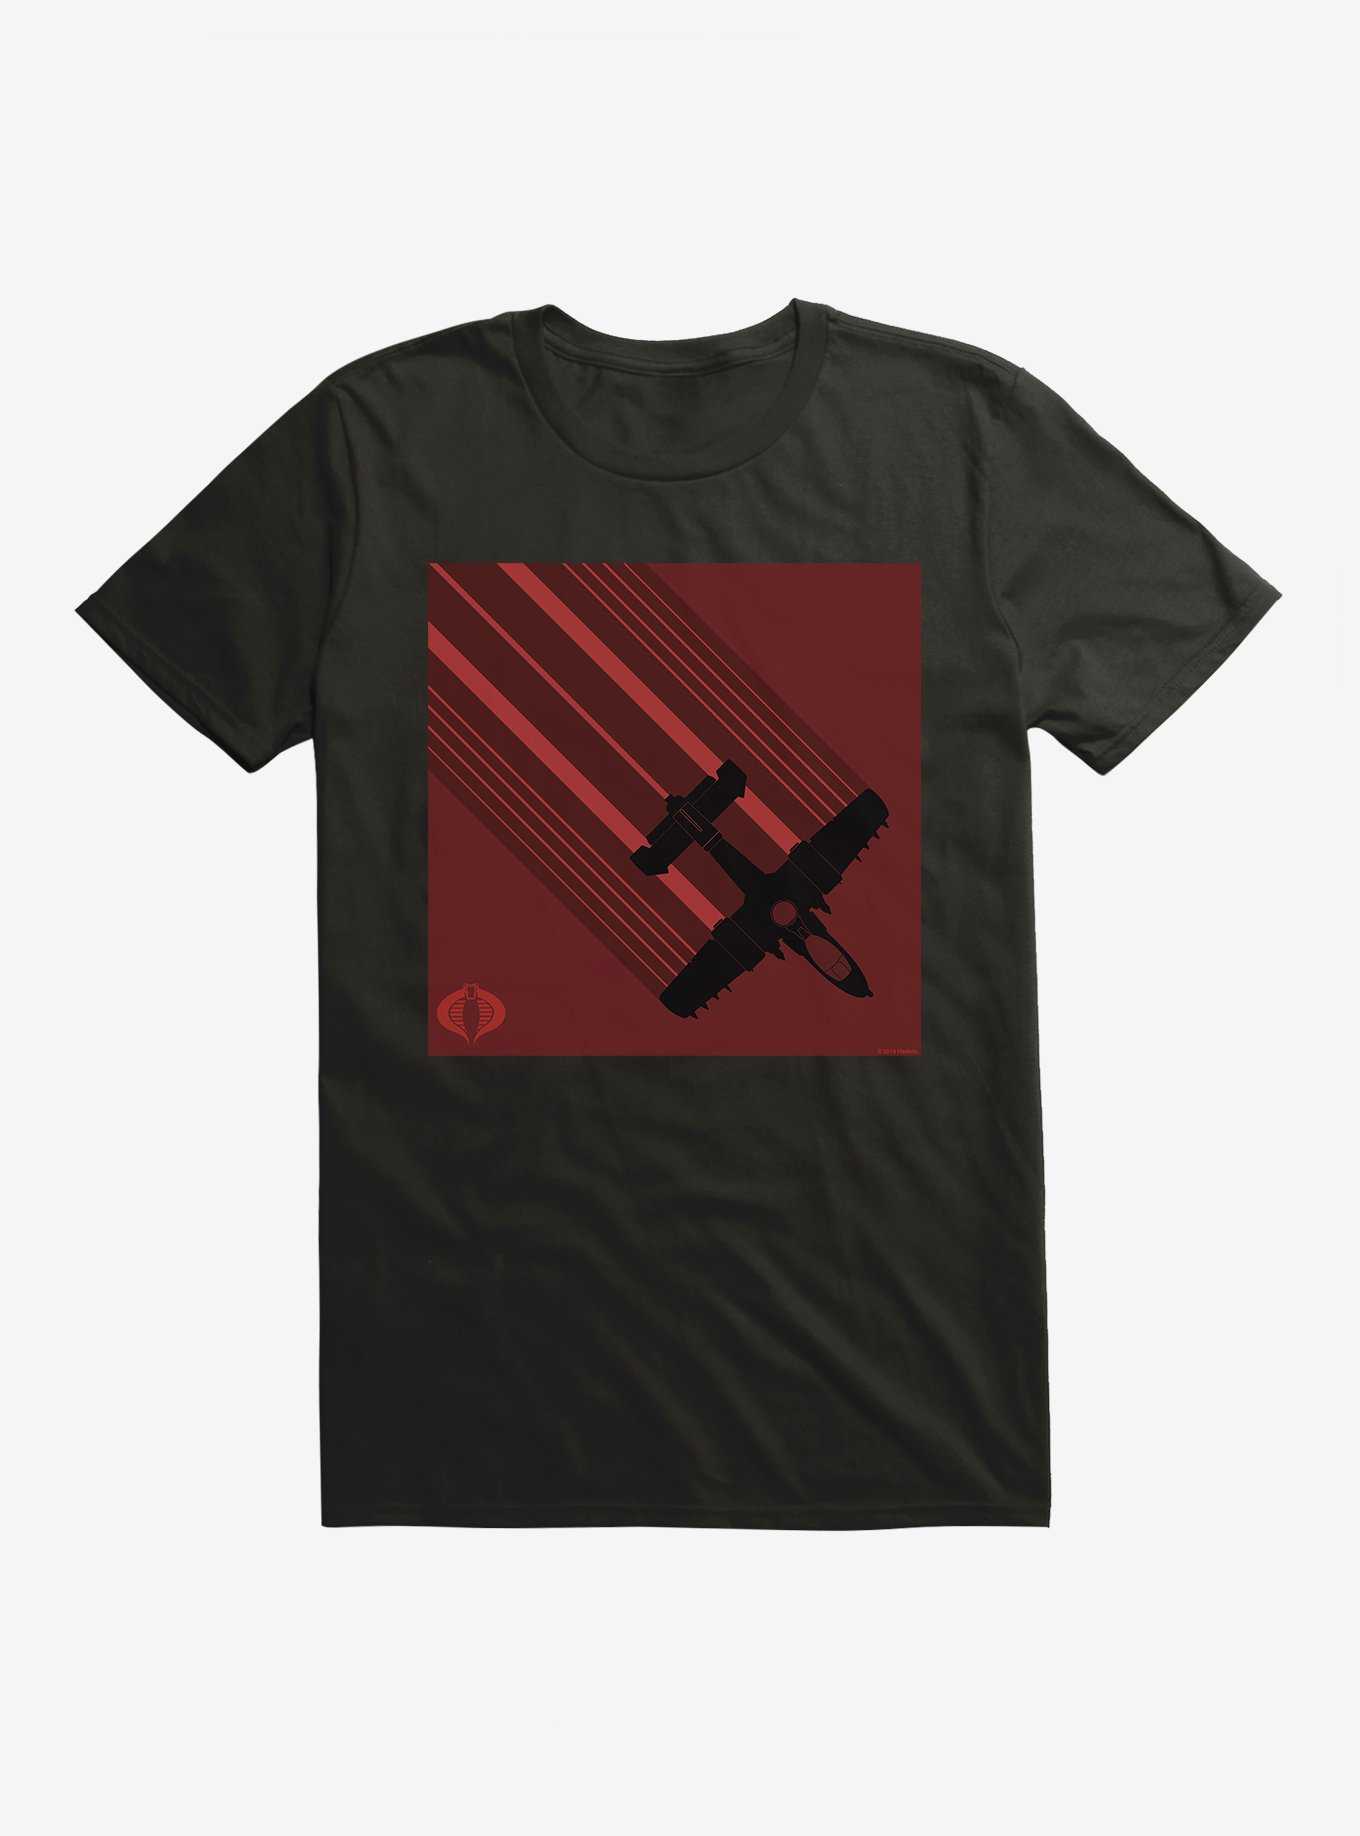 G.I. Joe Fighter Plane T-Shirt, , hi-res